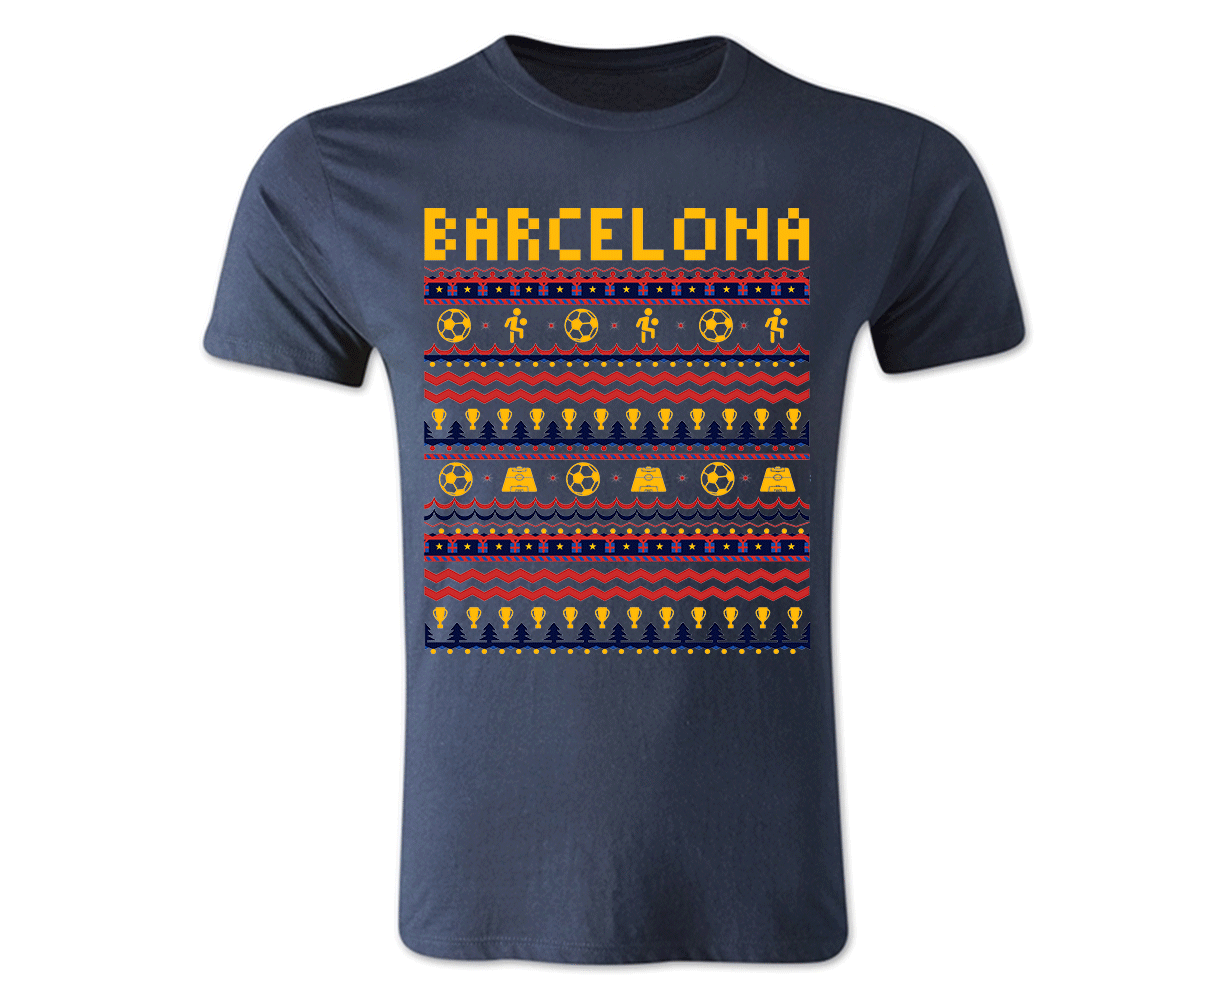 Barcelona Christmas T-Shirt (Navy)